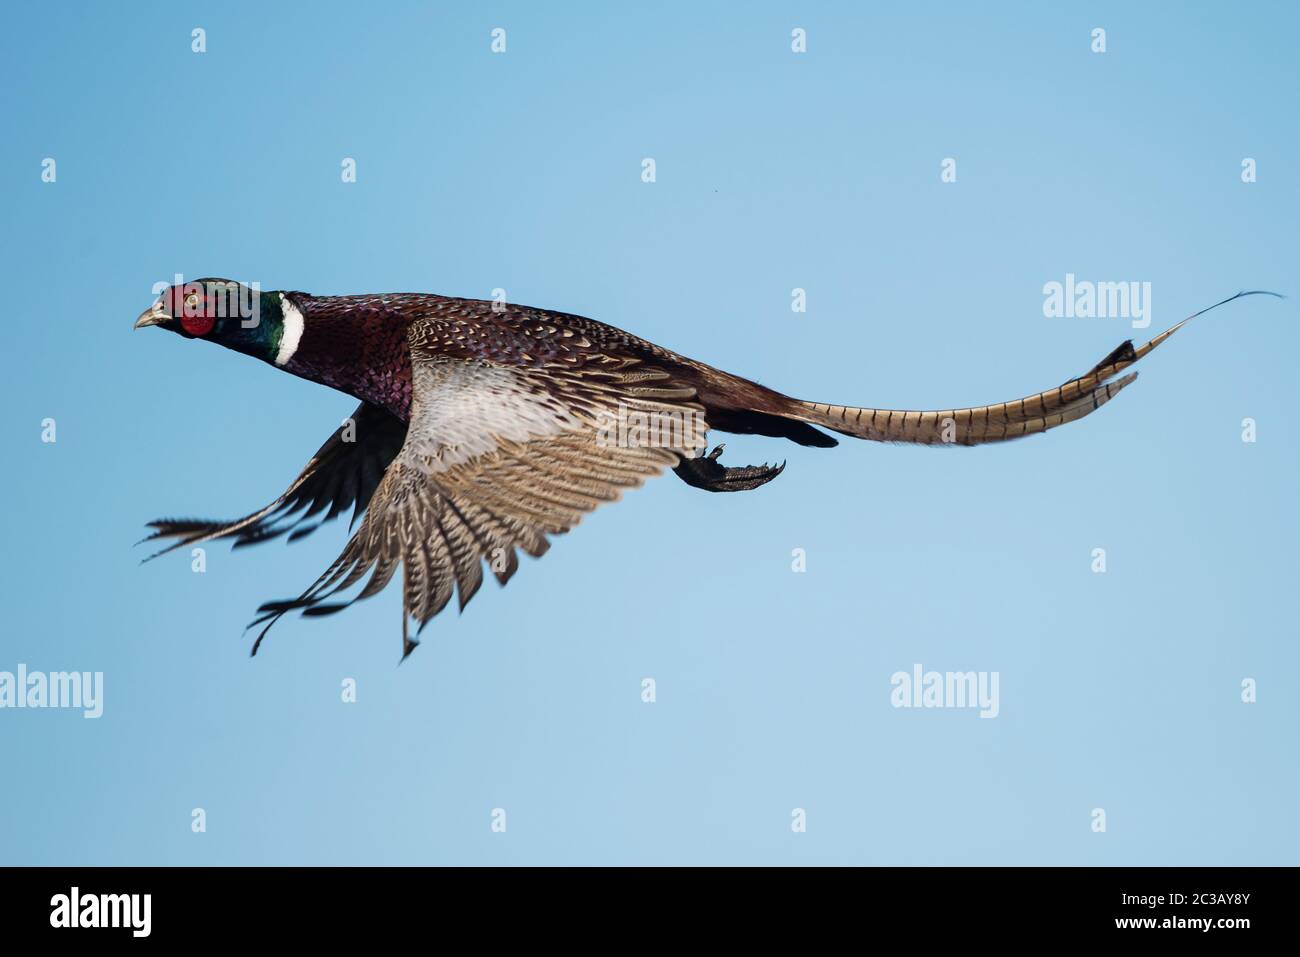 Männchen von Fasan im Flug am Himmel. Sein lateinischer Name ist Phasianus colchicus. Stockfoto